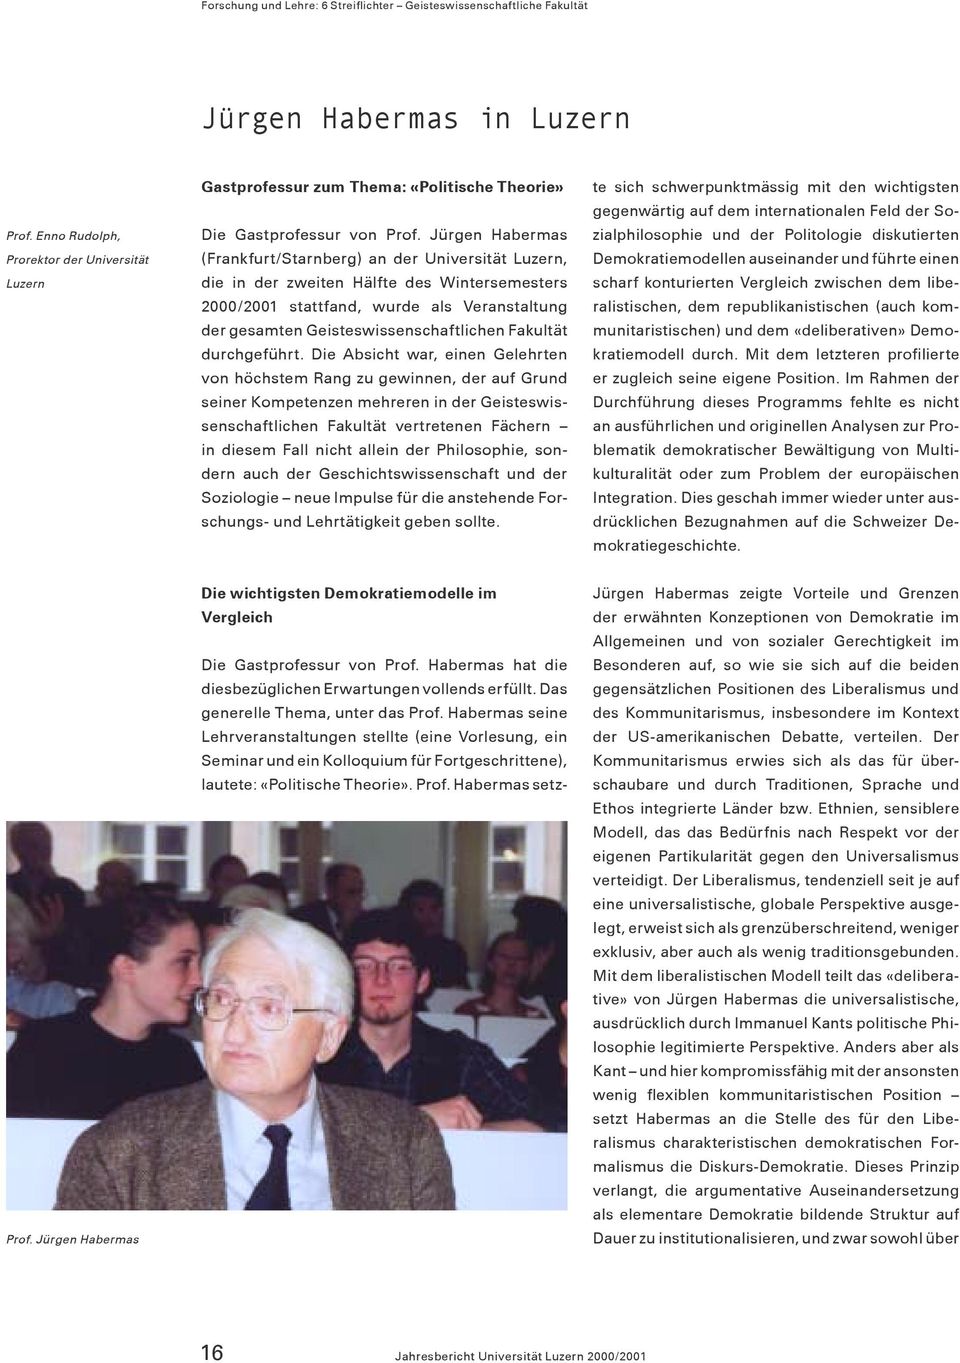 Jürgen Habermas (Frankfurt/Starnberg) an der Universität Luzern, die in der zweiten Hälfte des Wintersemesters 2000/2001 stattfand, wurde als Veranstaltung der gesamten Geisteswissenschaftlichen